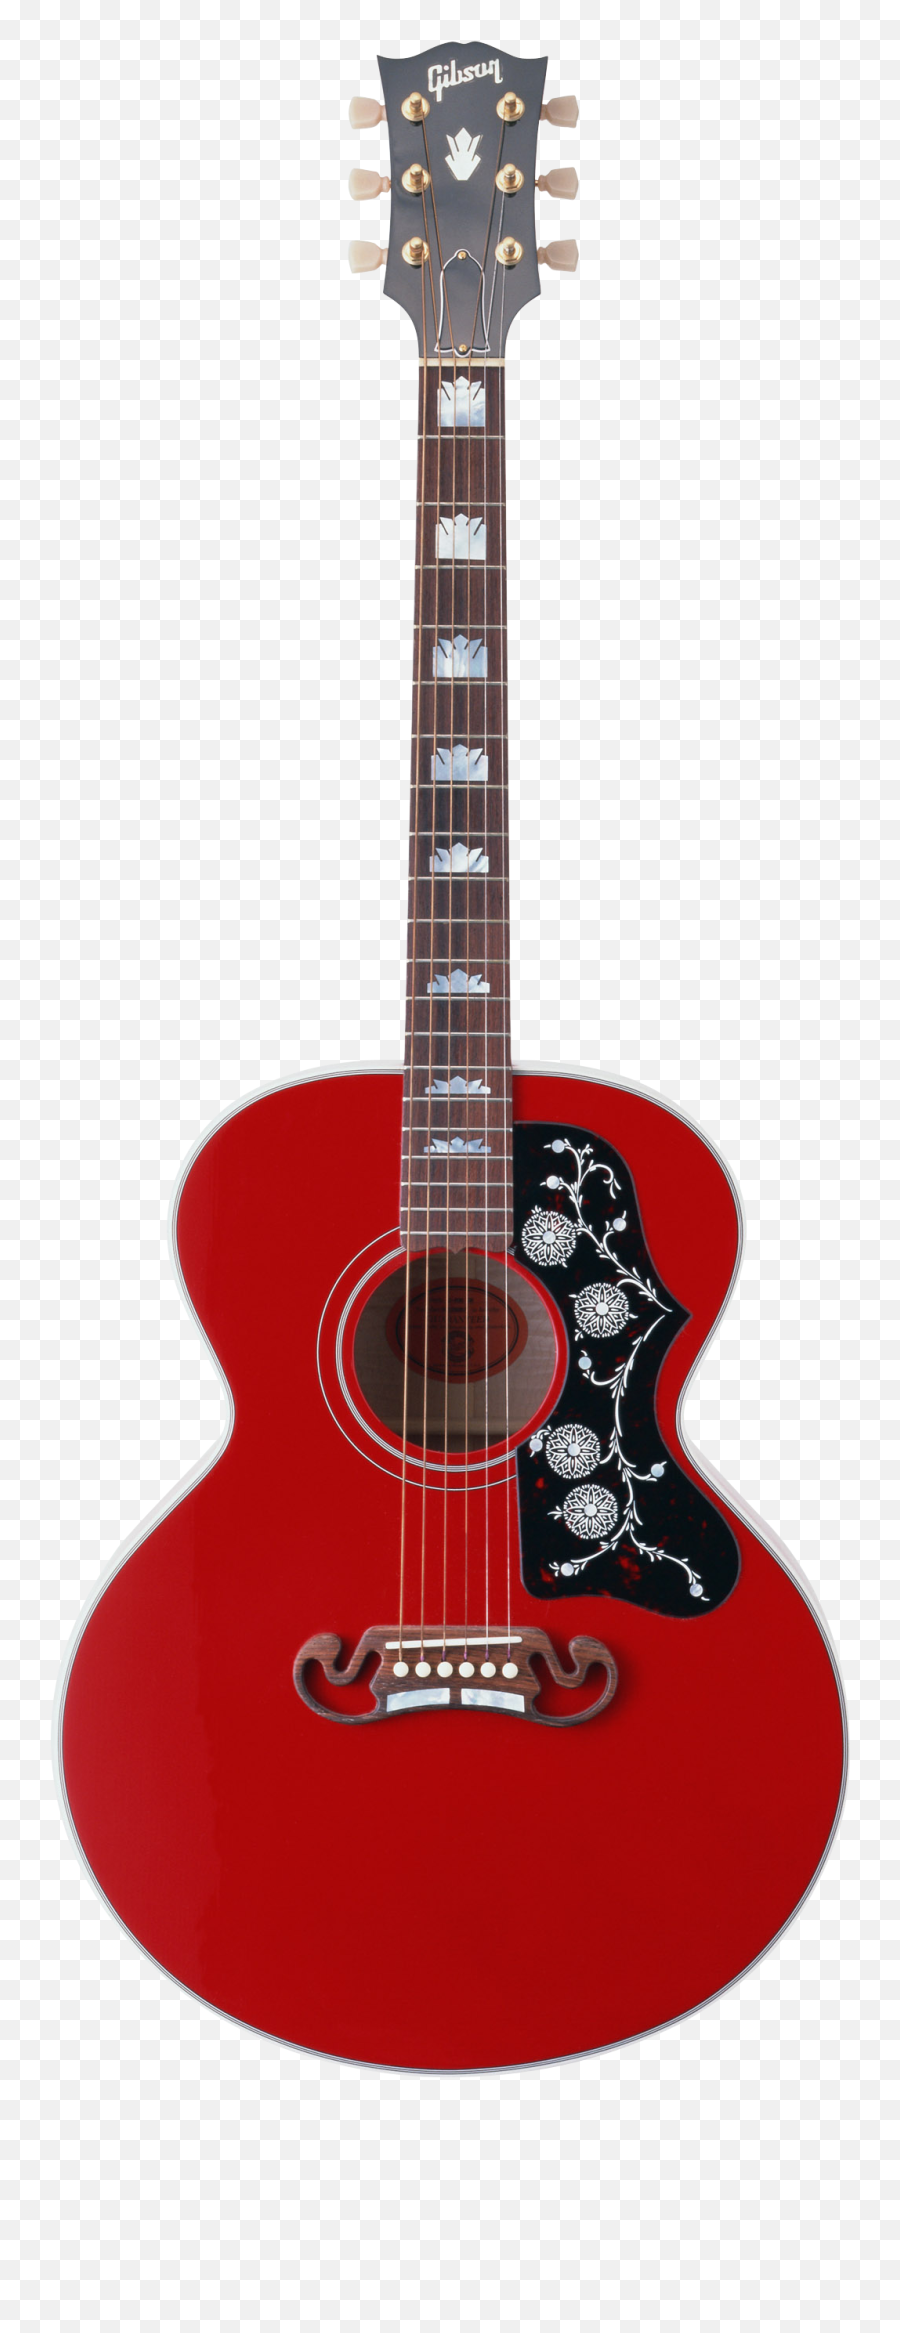 Guitar Png Image - Guitar Pngs Emoji,Guitar Png